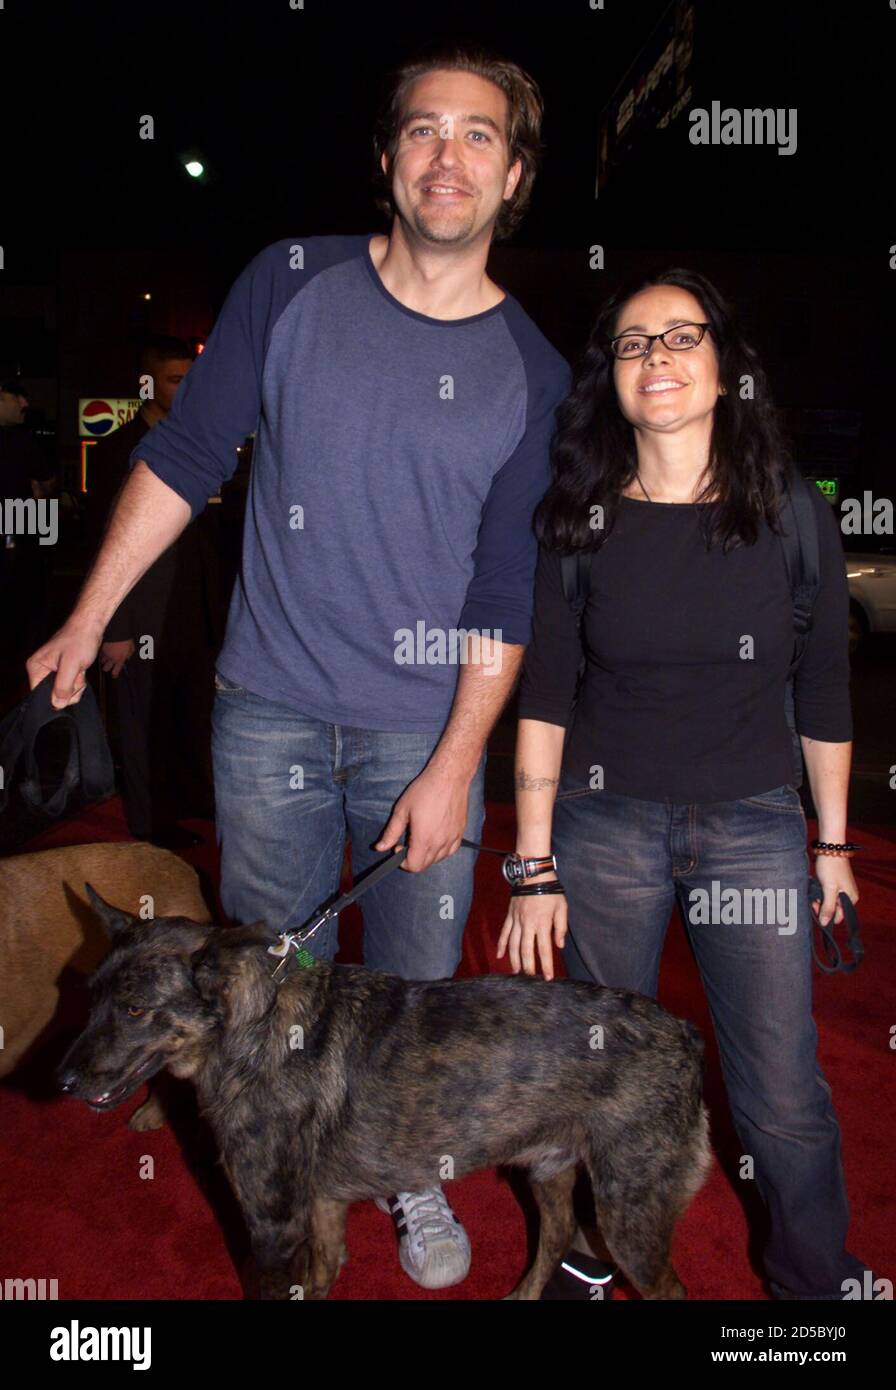 La actriz Janeane Garofalo, estrella de la nueva película de comedia 'Log  Park', posará con su perro y amigo Craig Bierko cuando lleguen al estreno  de la película, el 23 de septiembre